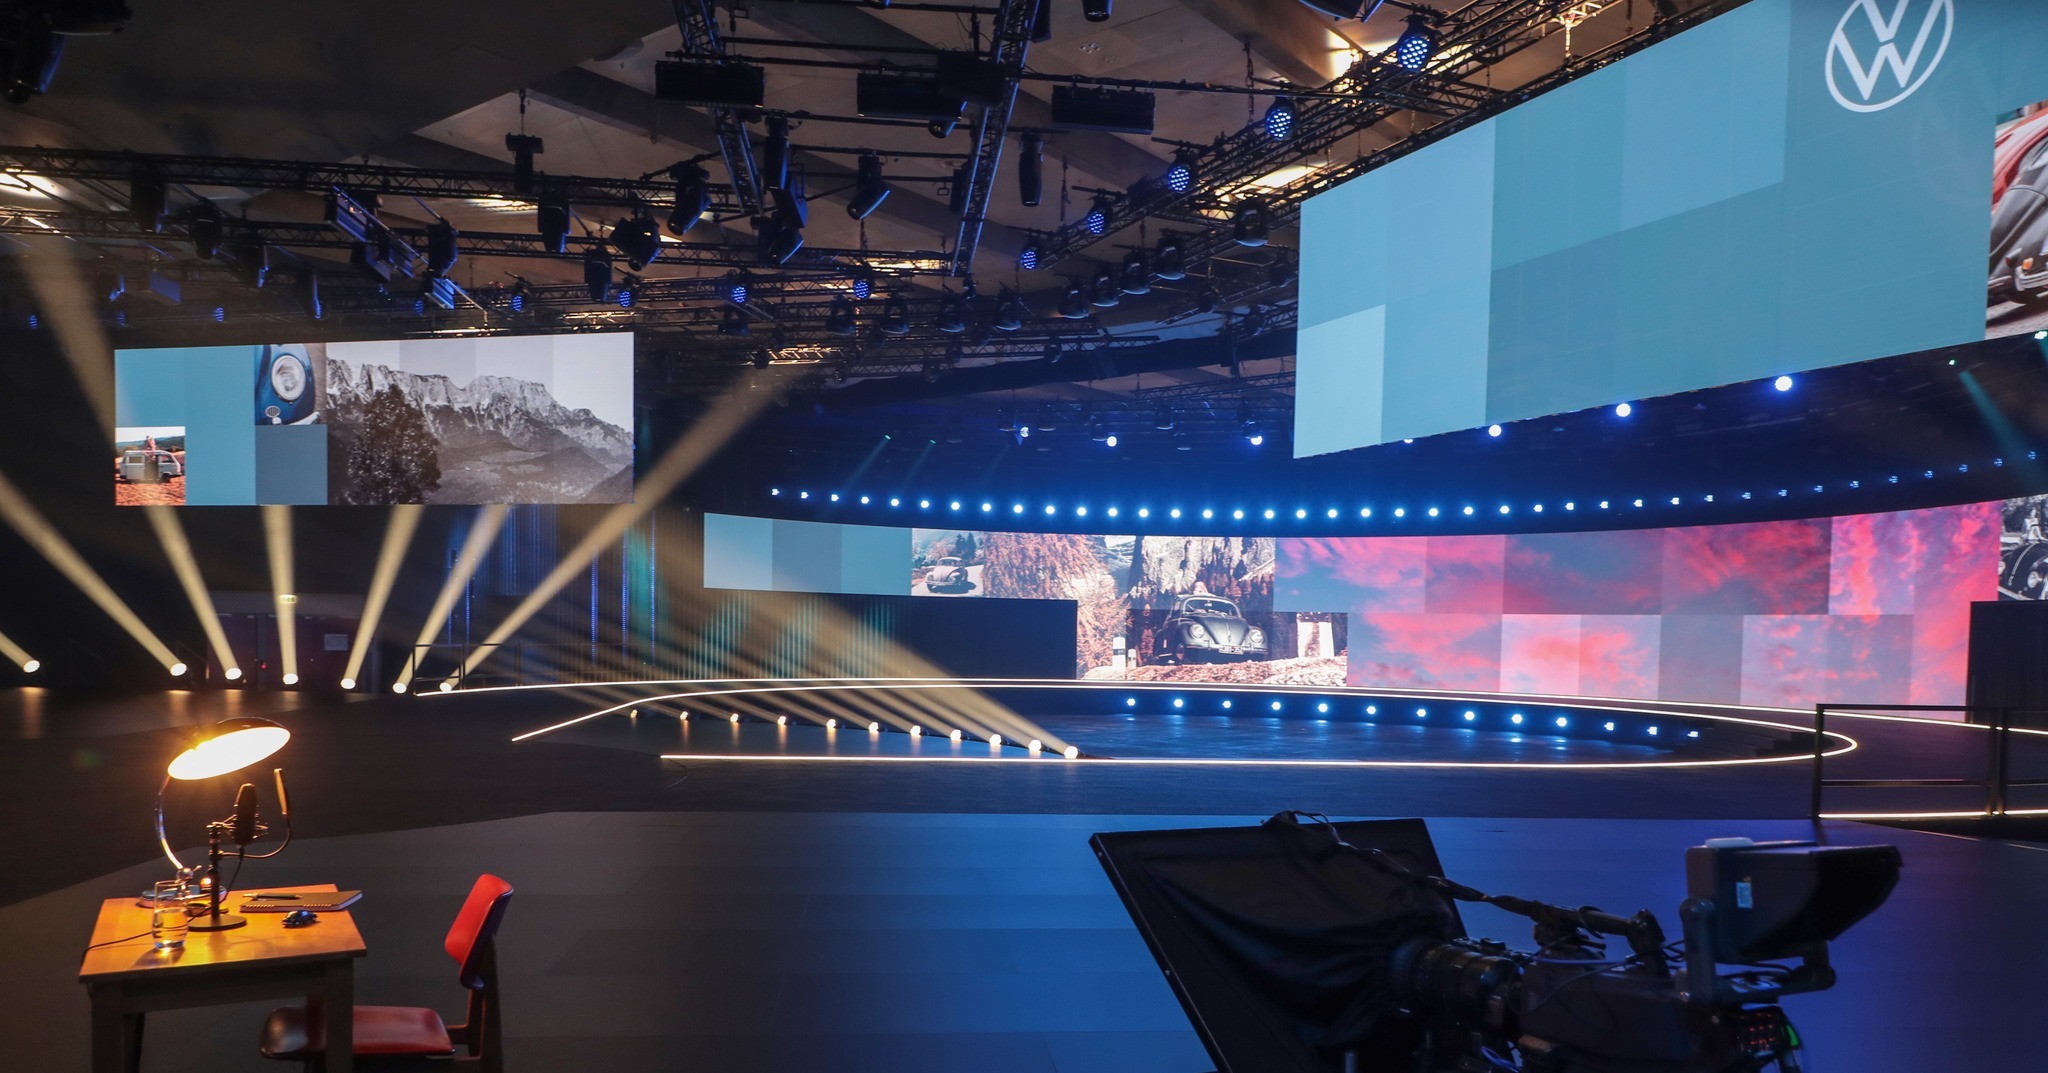 Como proveedor líder de tecnología para eventos, PRG proporcionó rigging, iluminación, tecnología de audio y vídeo y tecnología de intercomunicación para celebrar el estreno mundial del coche de exposición "ID.2all" de VW en Hamburgo.